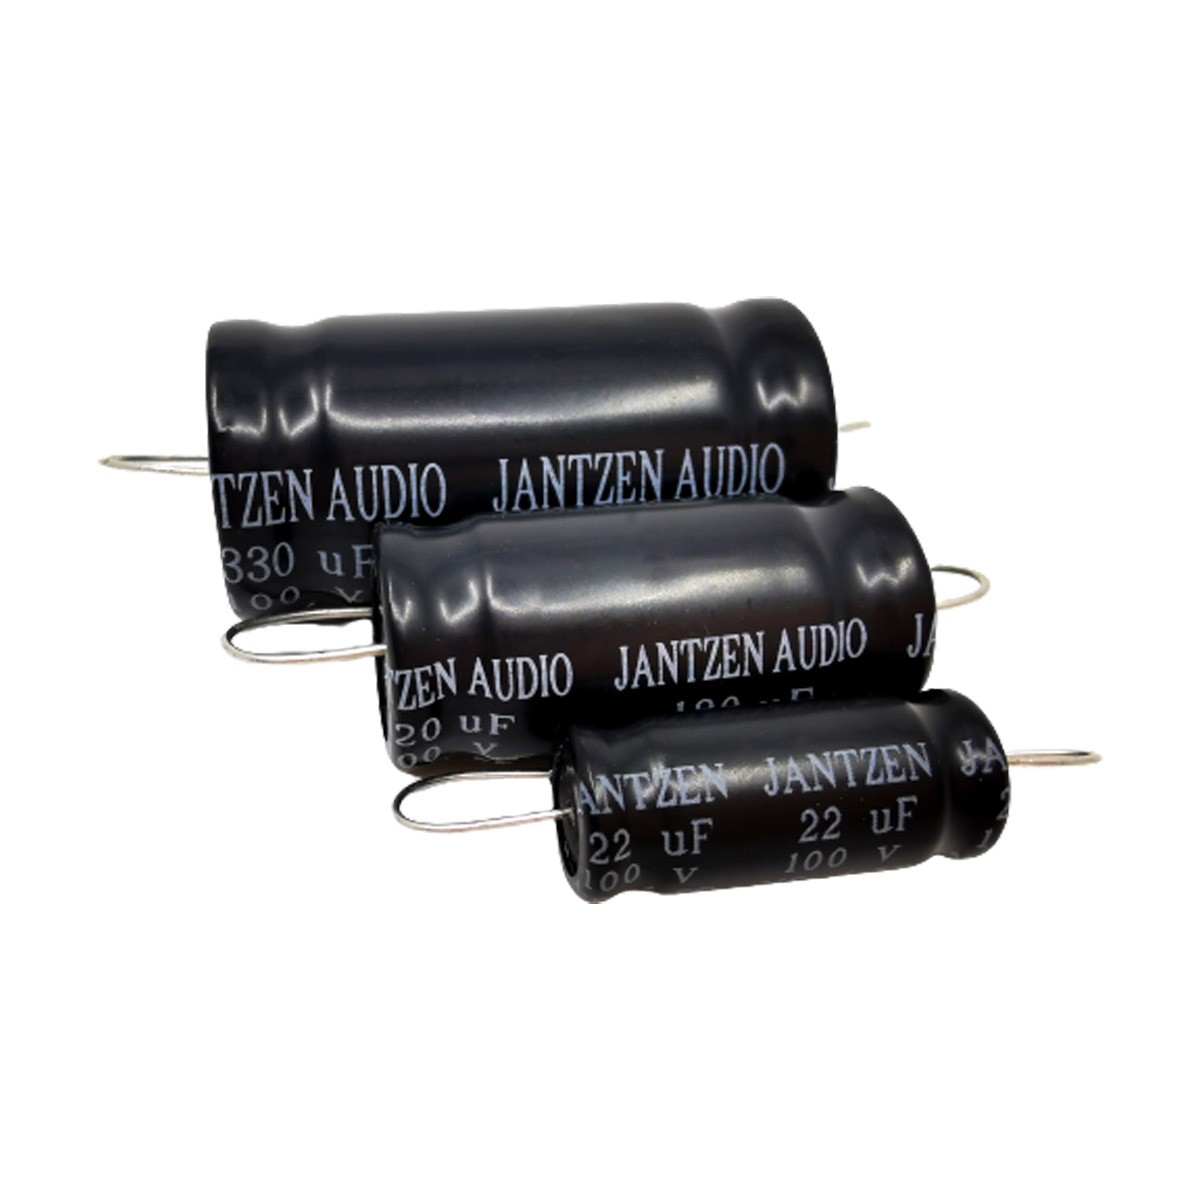 JANTZEN AUDIO ELECAP Condensateur Électrolytique 100V 300µF 5%